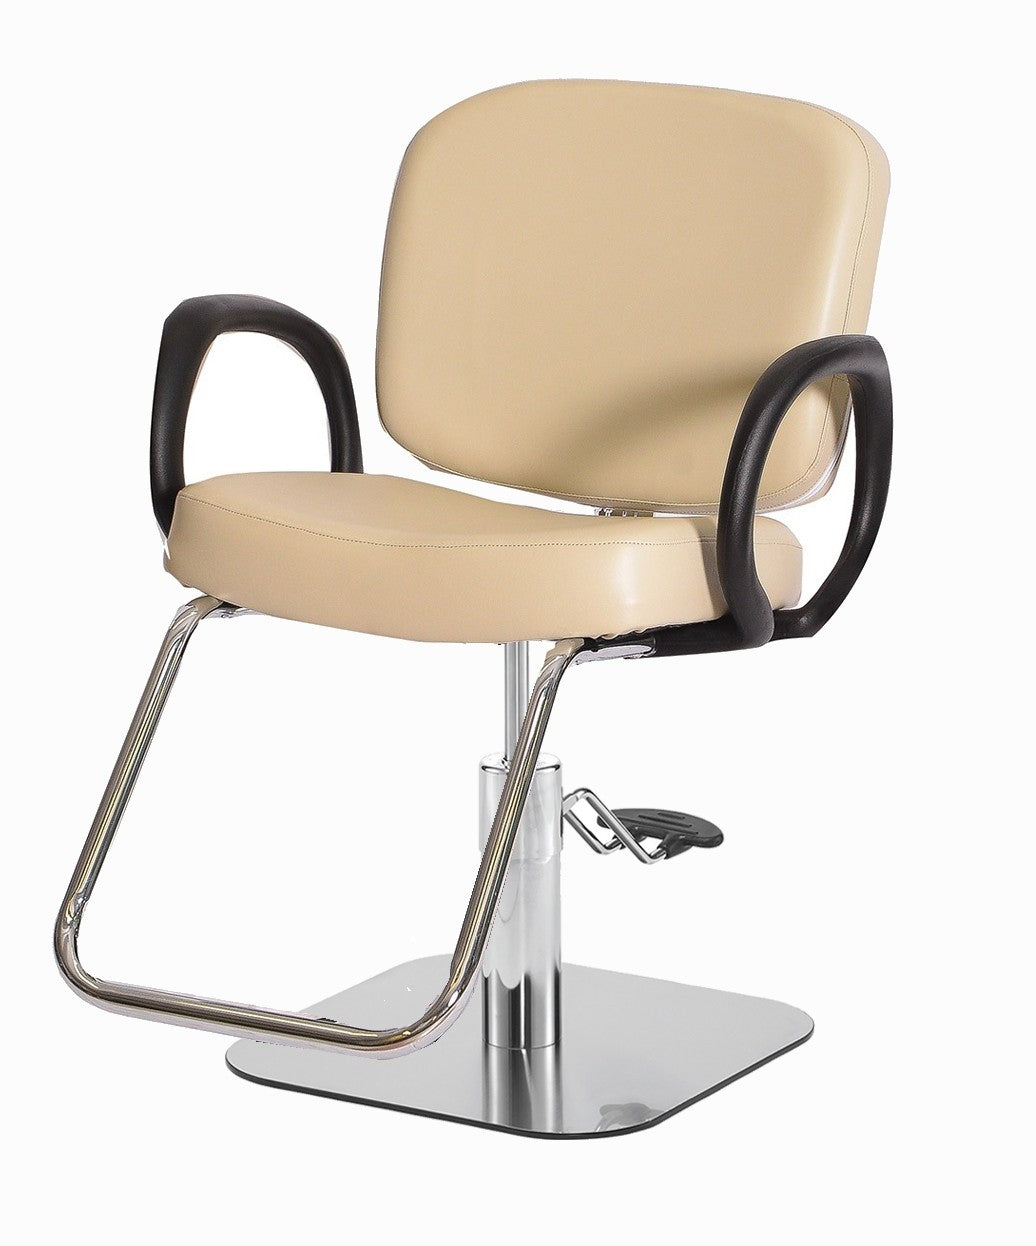 Pibbs 5406 Loop Styling Chair